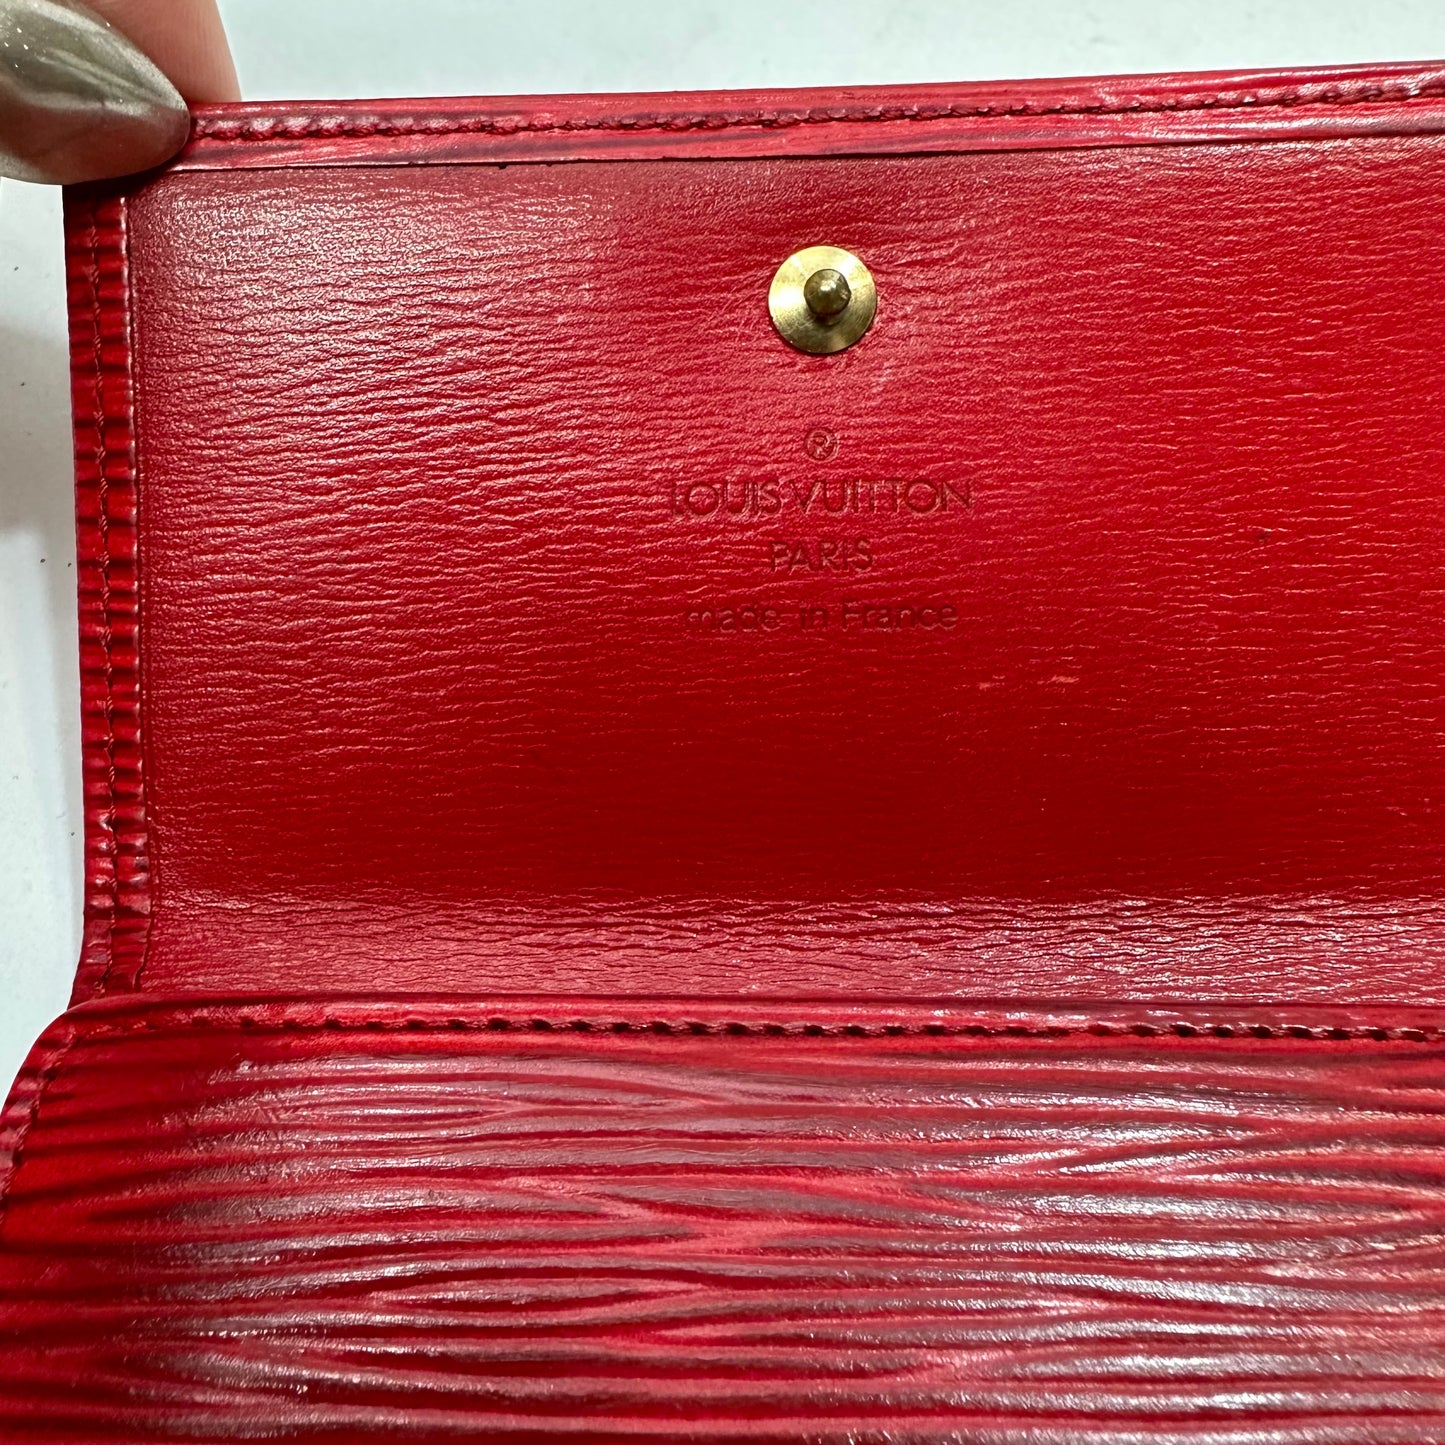 Vintage Louis Vuitton Red Epi Leather Porte Monnaie Billets Cartes Credit Wallet